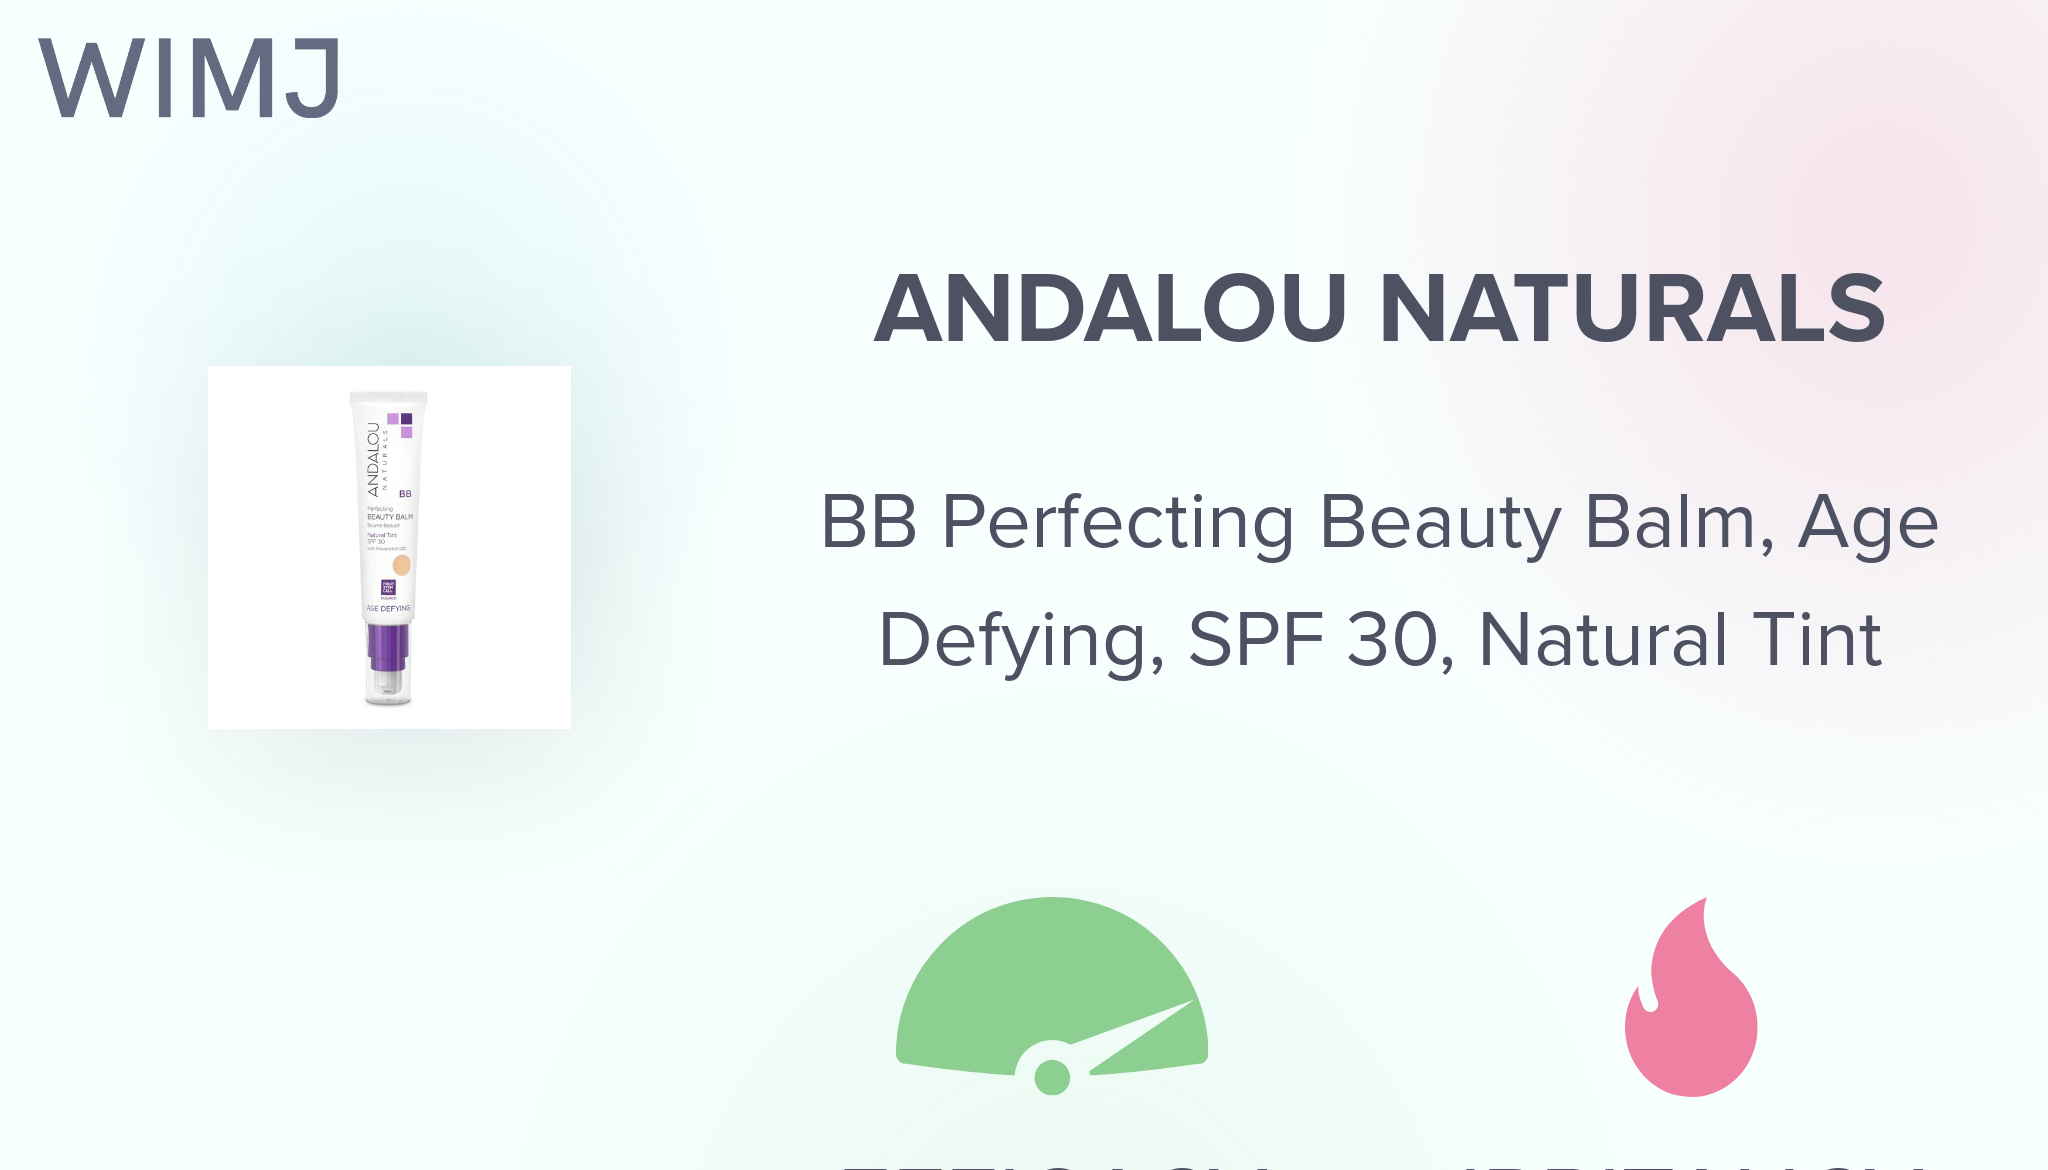  Andalou Naturals Perfecting BB Beauty Balm Natural